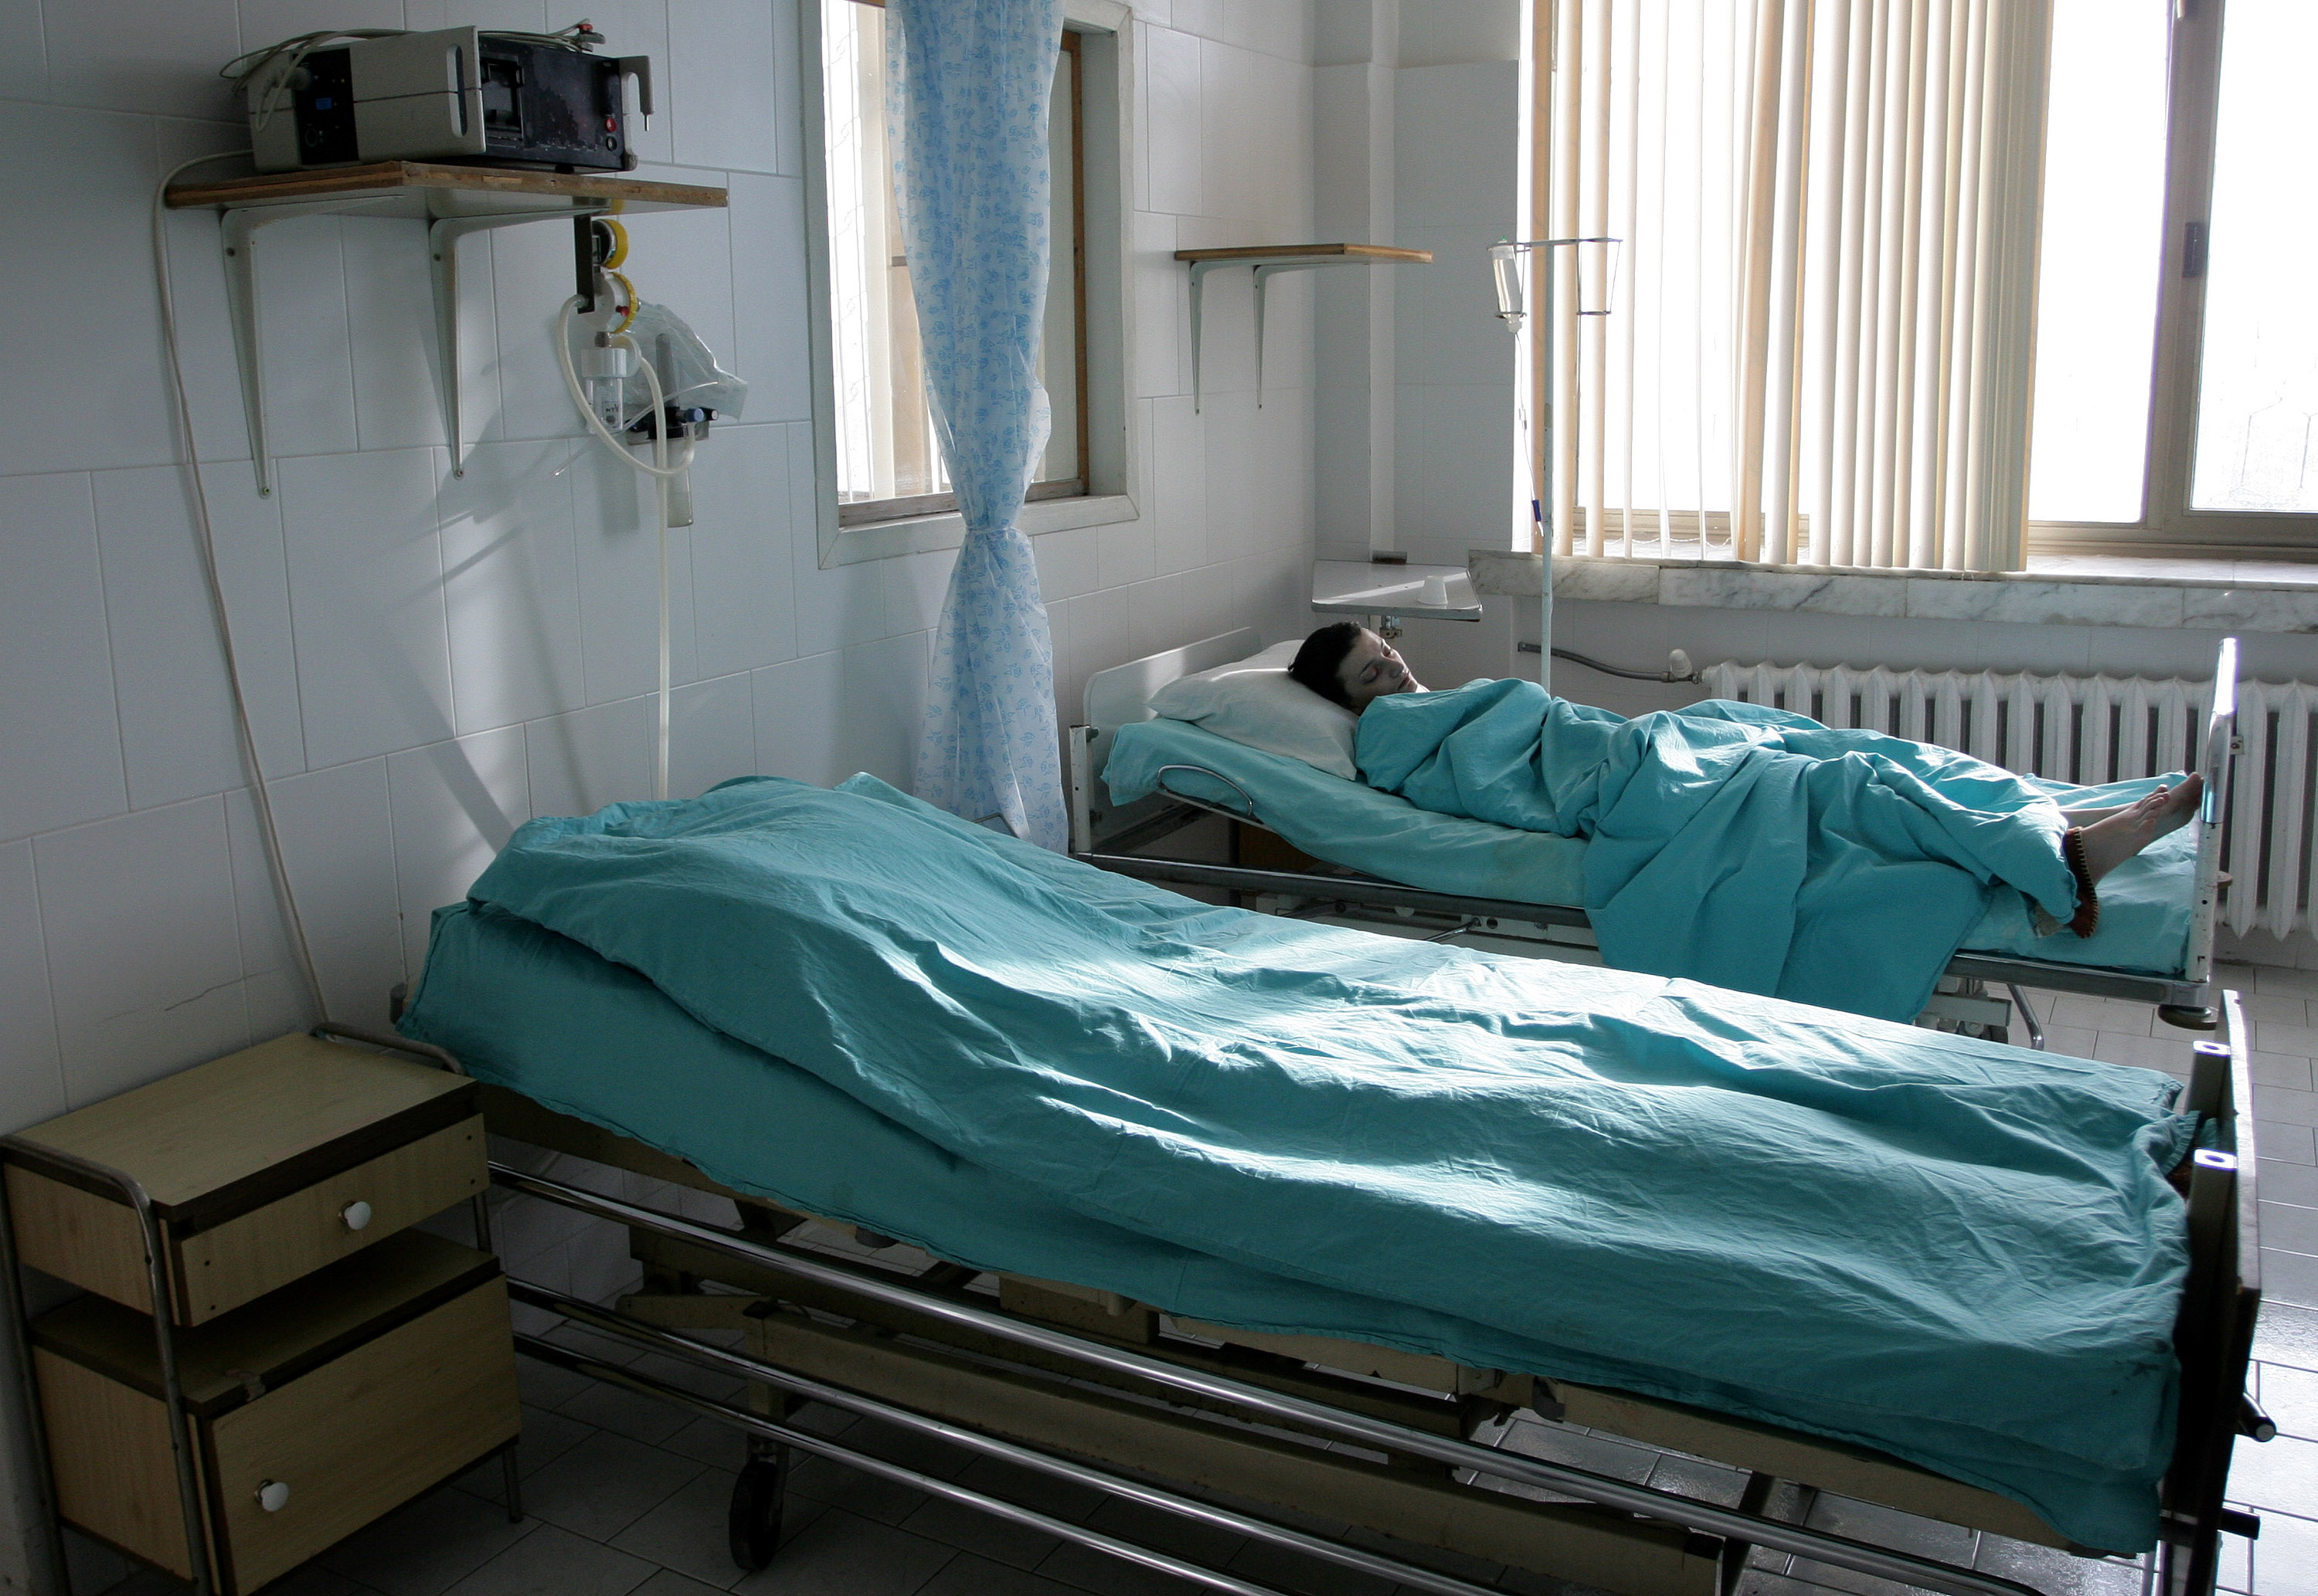 Руски лекар ще прегледа изпадналата в кома самотна майка в Бургас